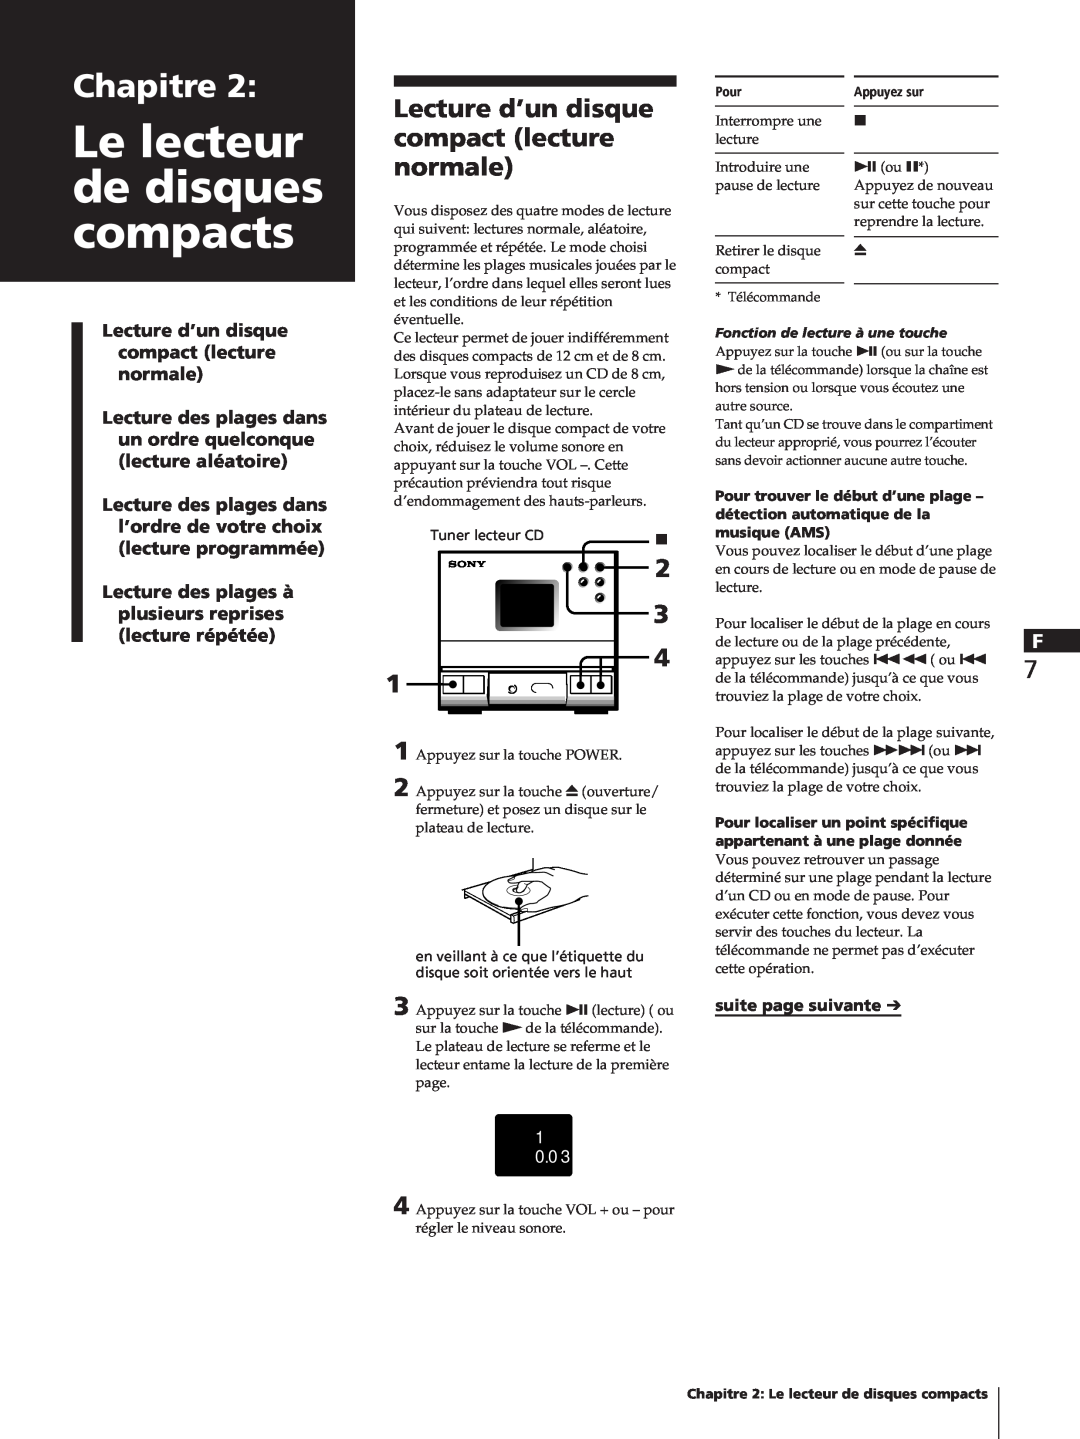 Sony SA-N11, HCD-T1, TC-TX1 Le lecteur de disques compacts, Chapitre, Lecture d’un disque, compact lecture, normale, 1 0 0 